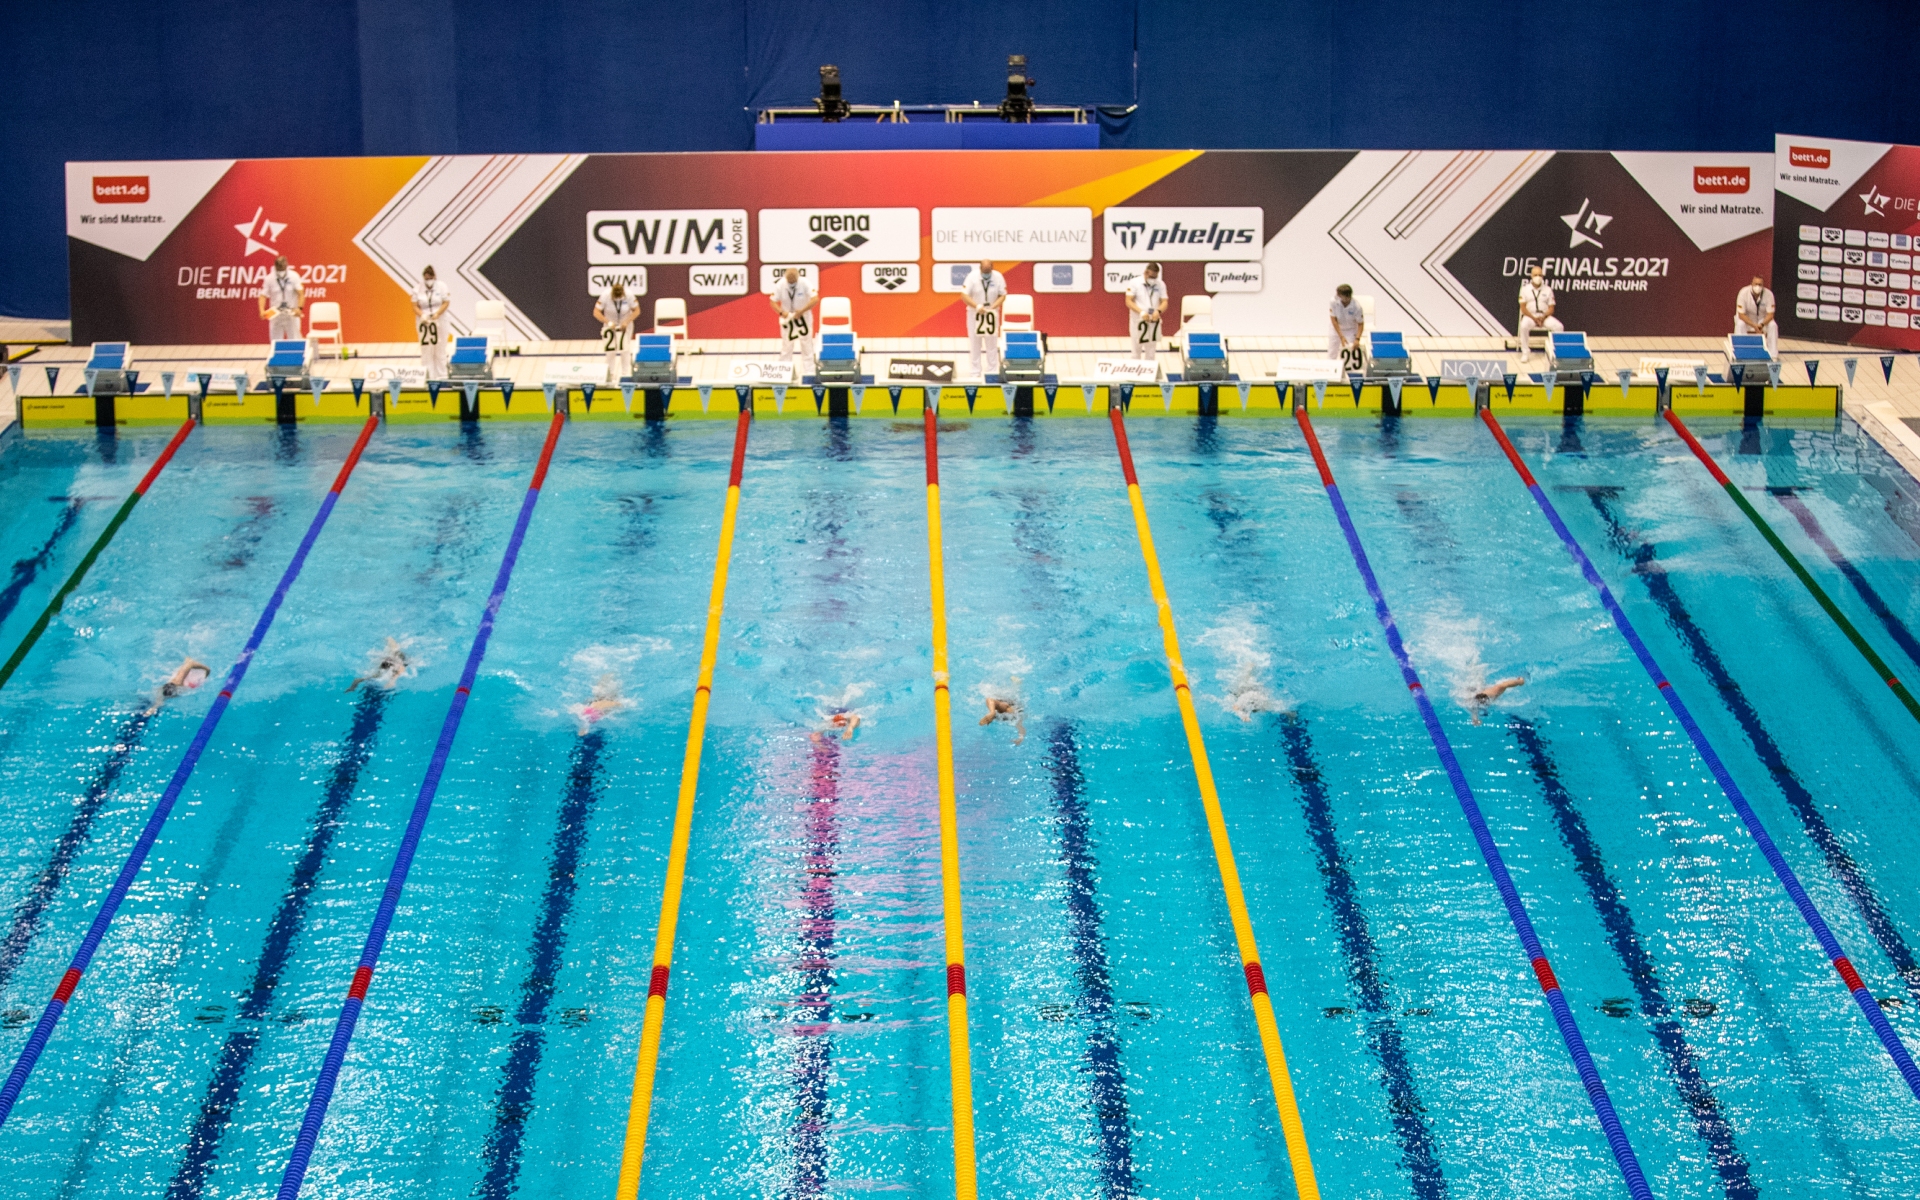 Отобранный у Казани чемпионат мира по плаванию пройдет в Мельбурне